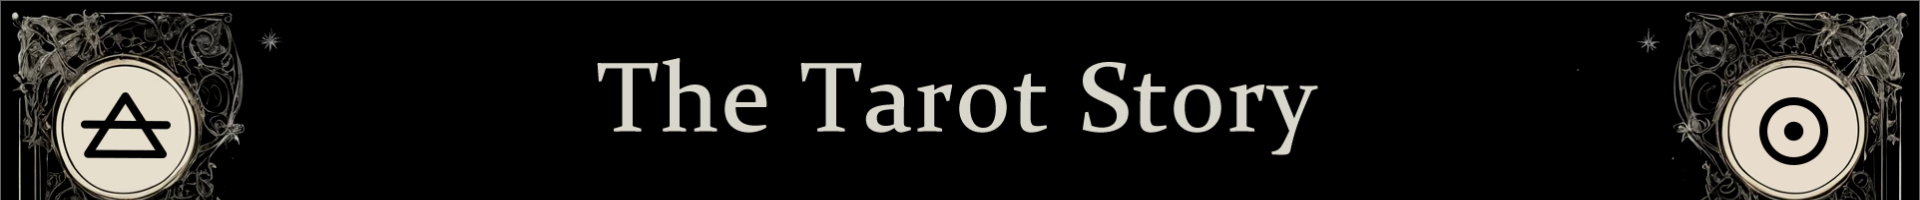 The Tarot Story